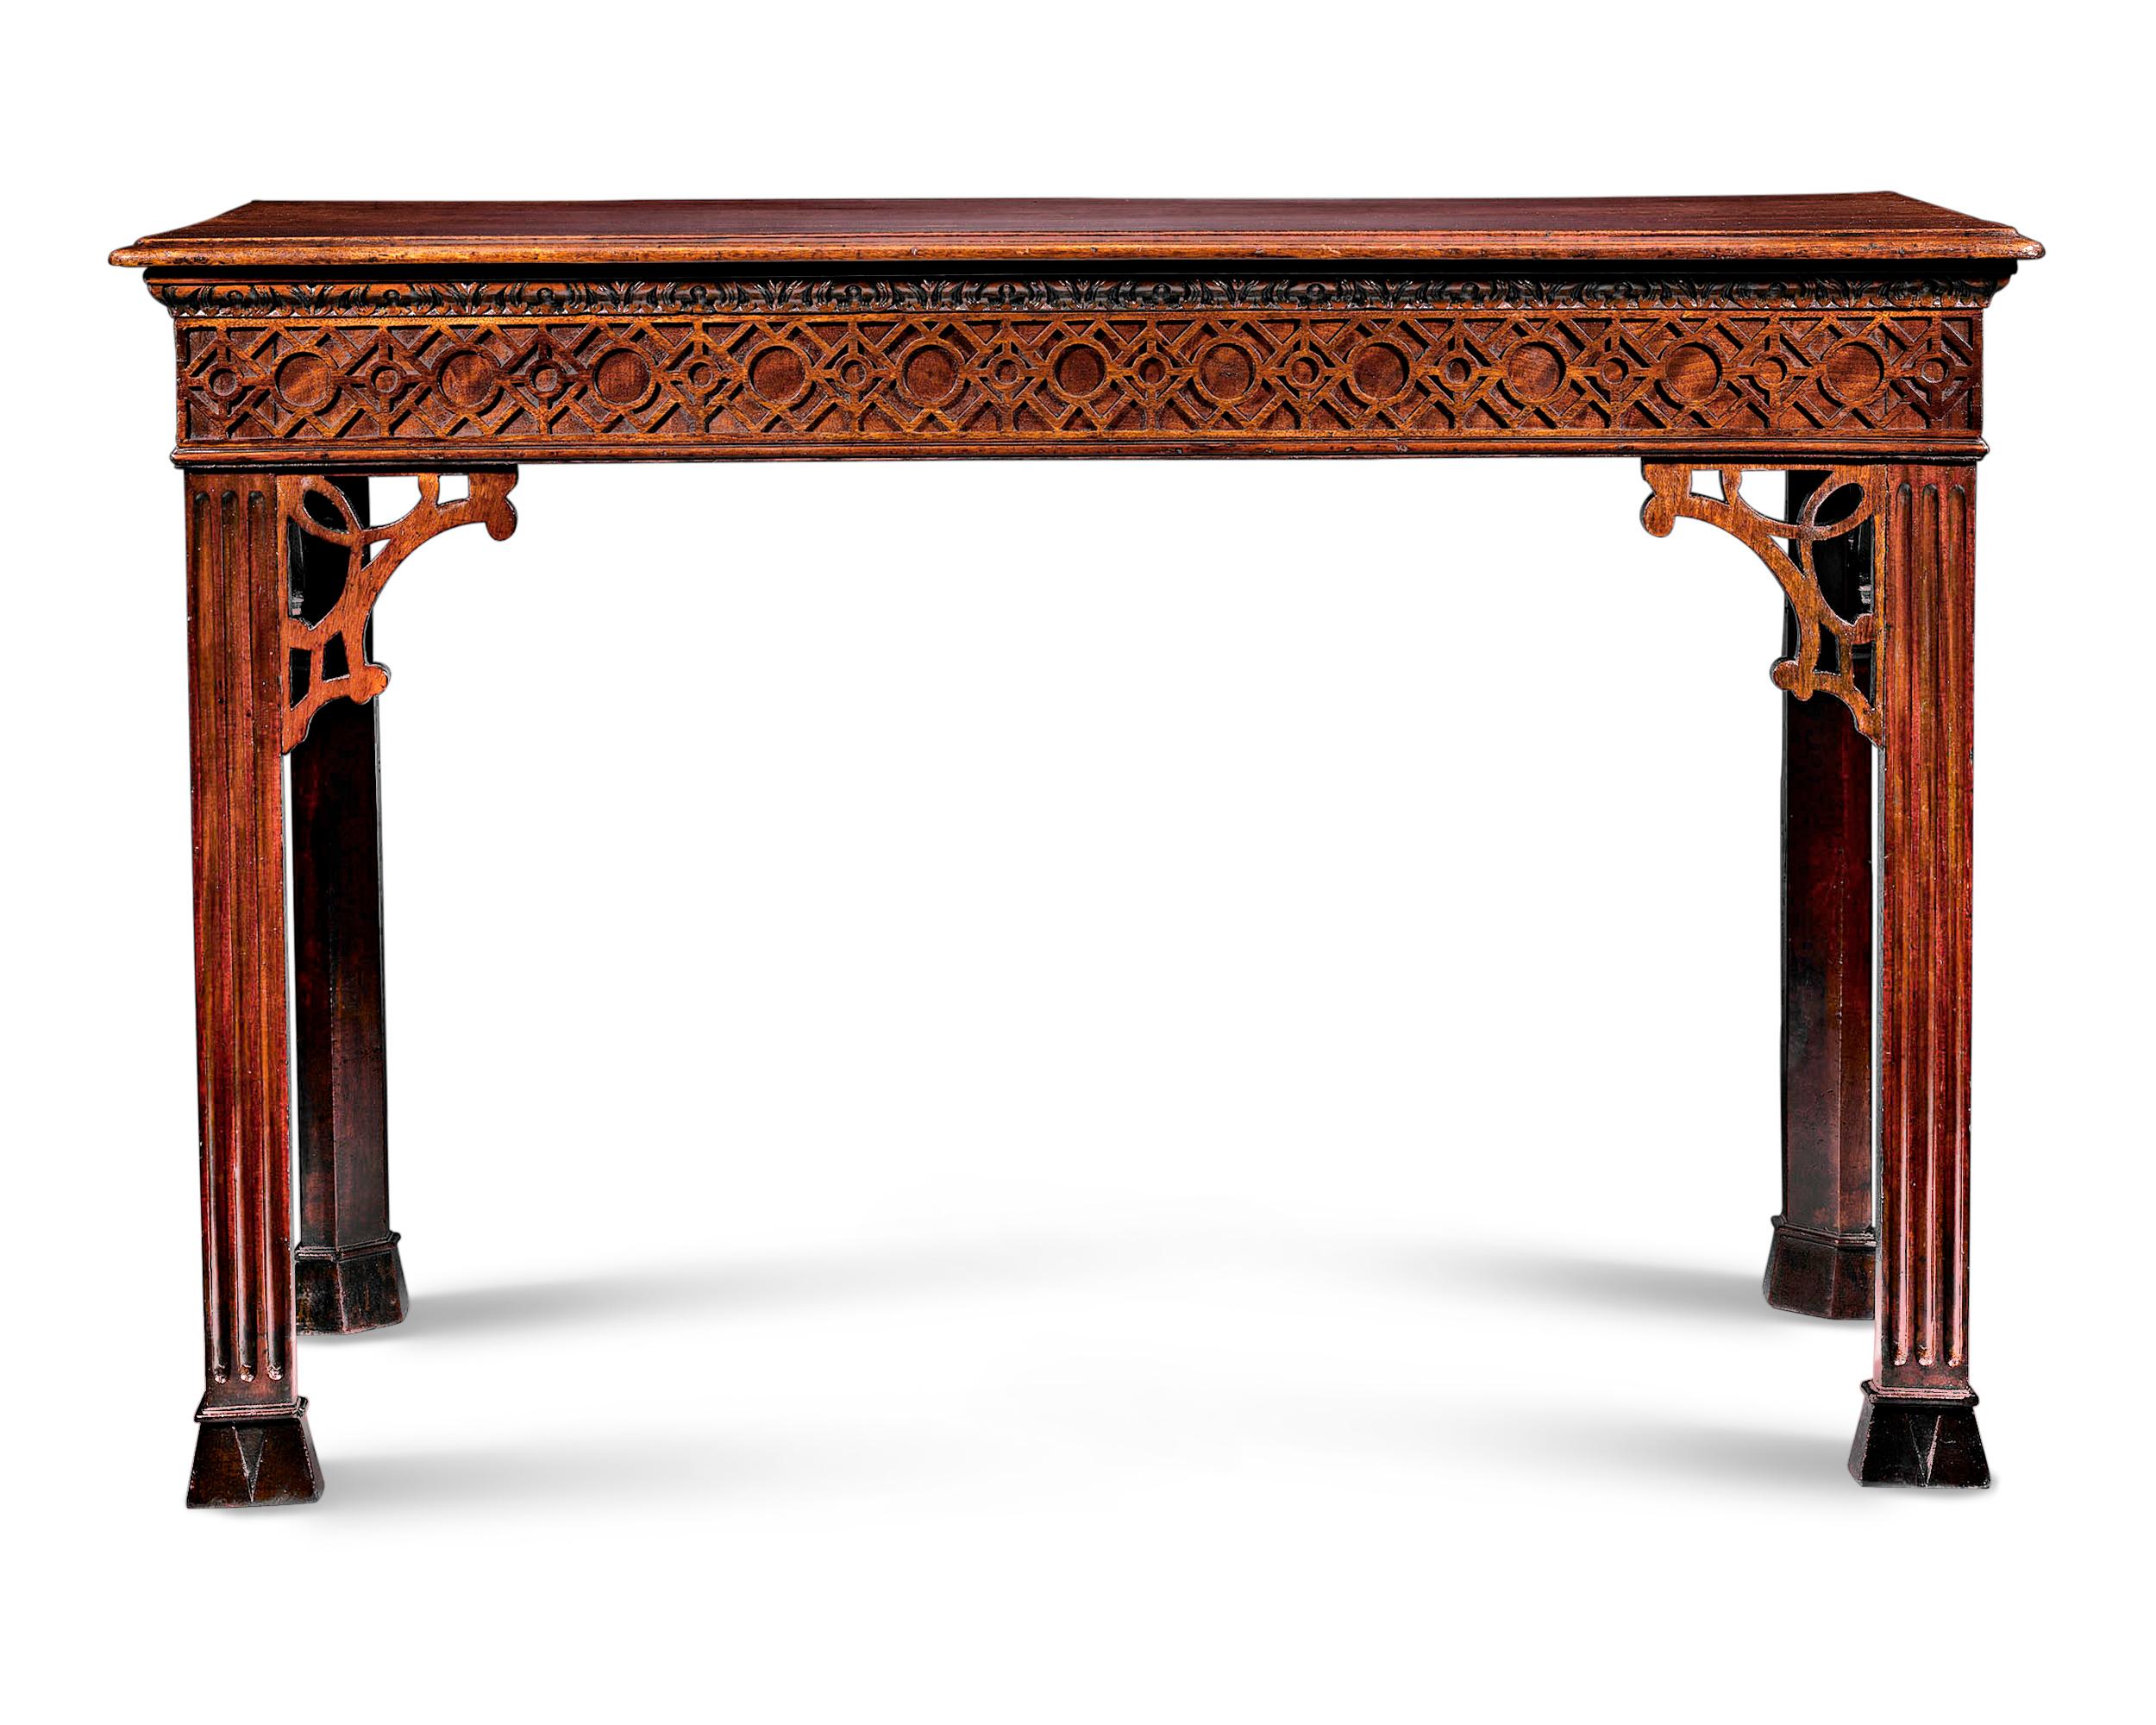 Dieser englische Konsolentisch aus Mahagoni ist ein seltenes Beispiel für den kunstvollen chinesischen Chippendale-Stil. Dieser Tisch ist eine Studie der Symmetrie und Ausgewogenheit und verbindet die schlichte Eleganz der georgianischen Epoche mit